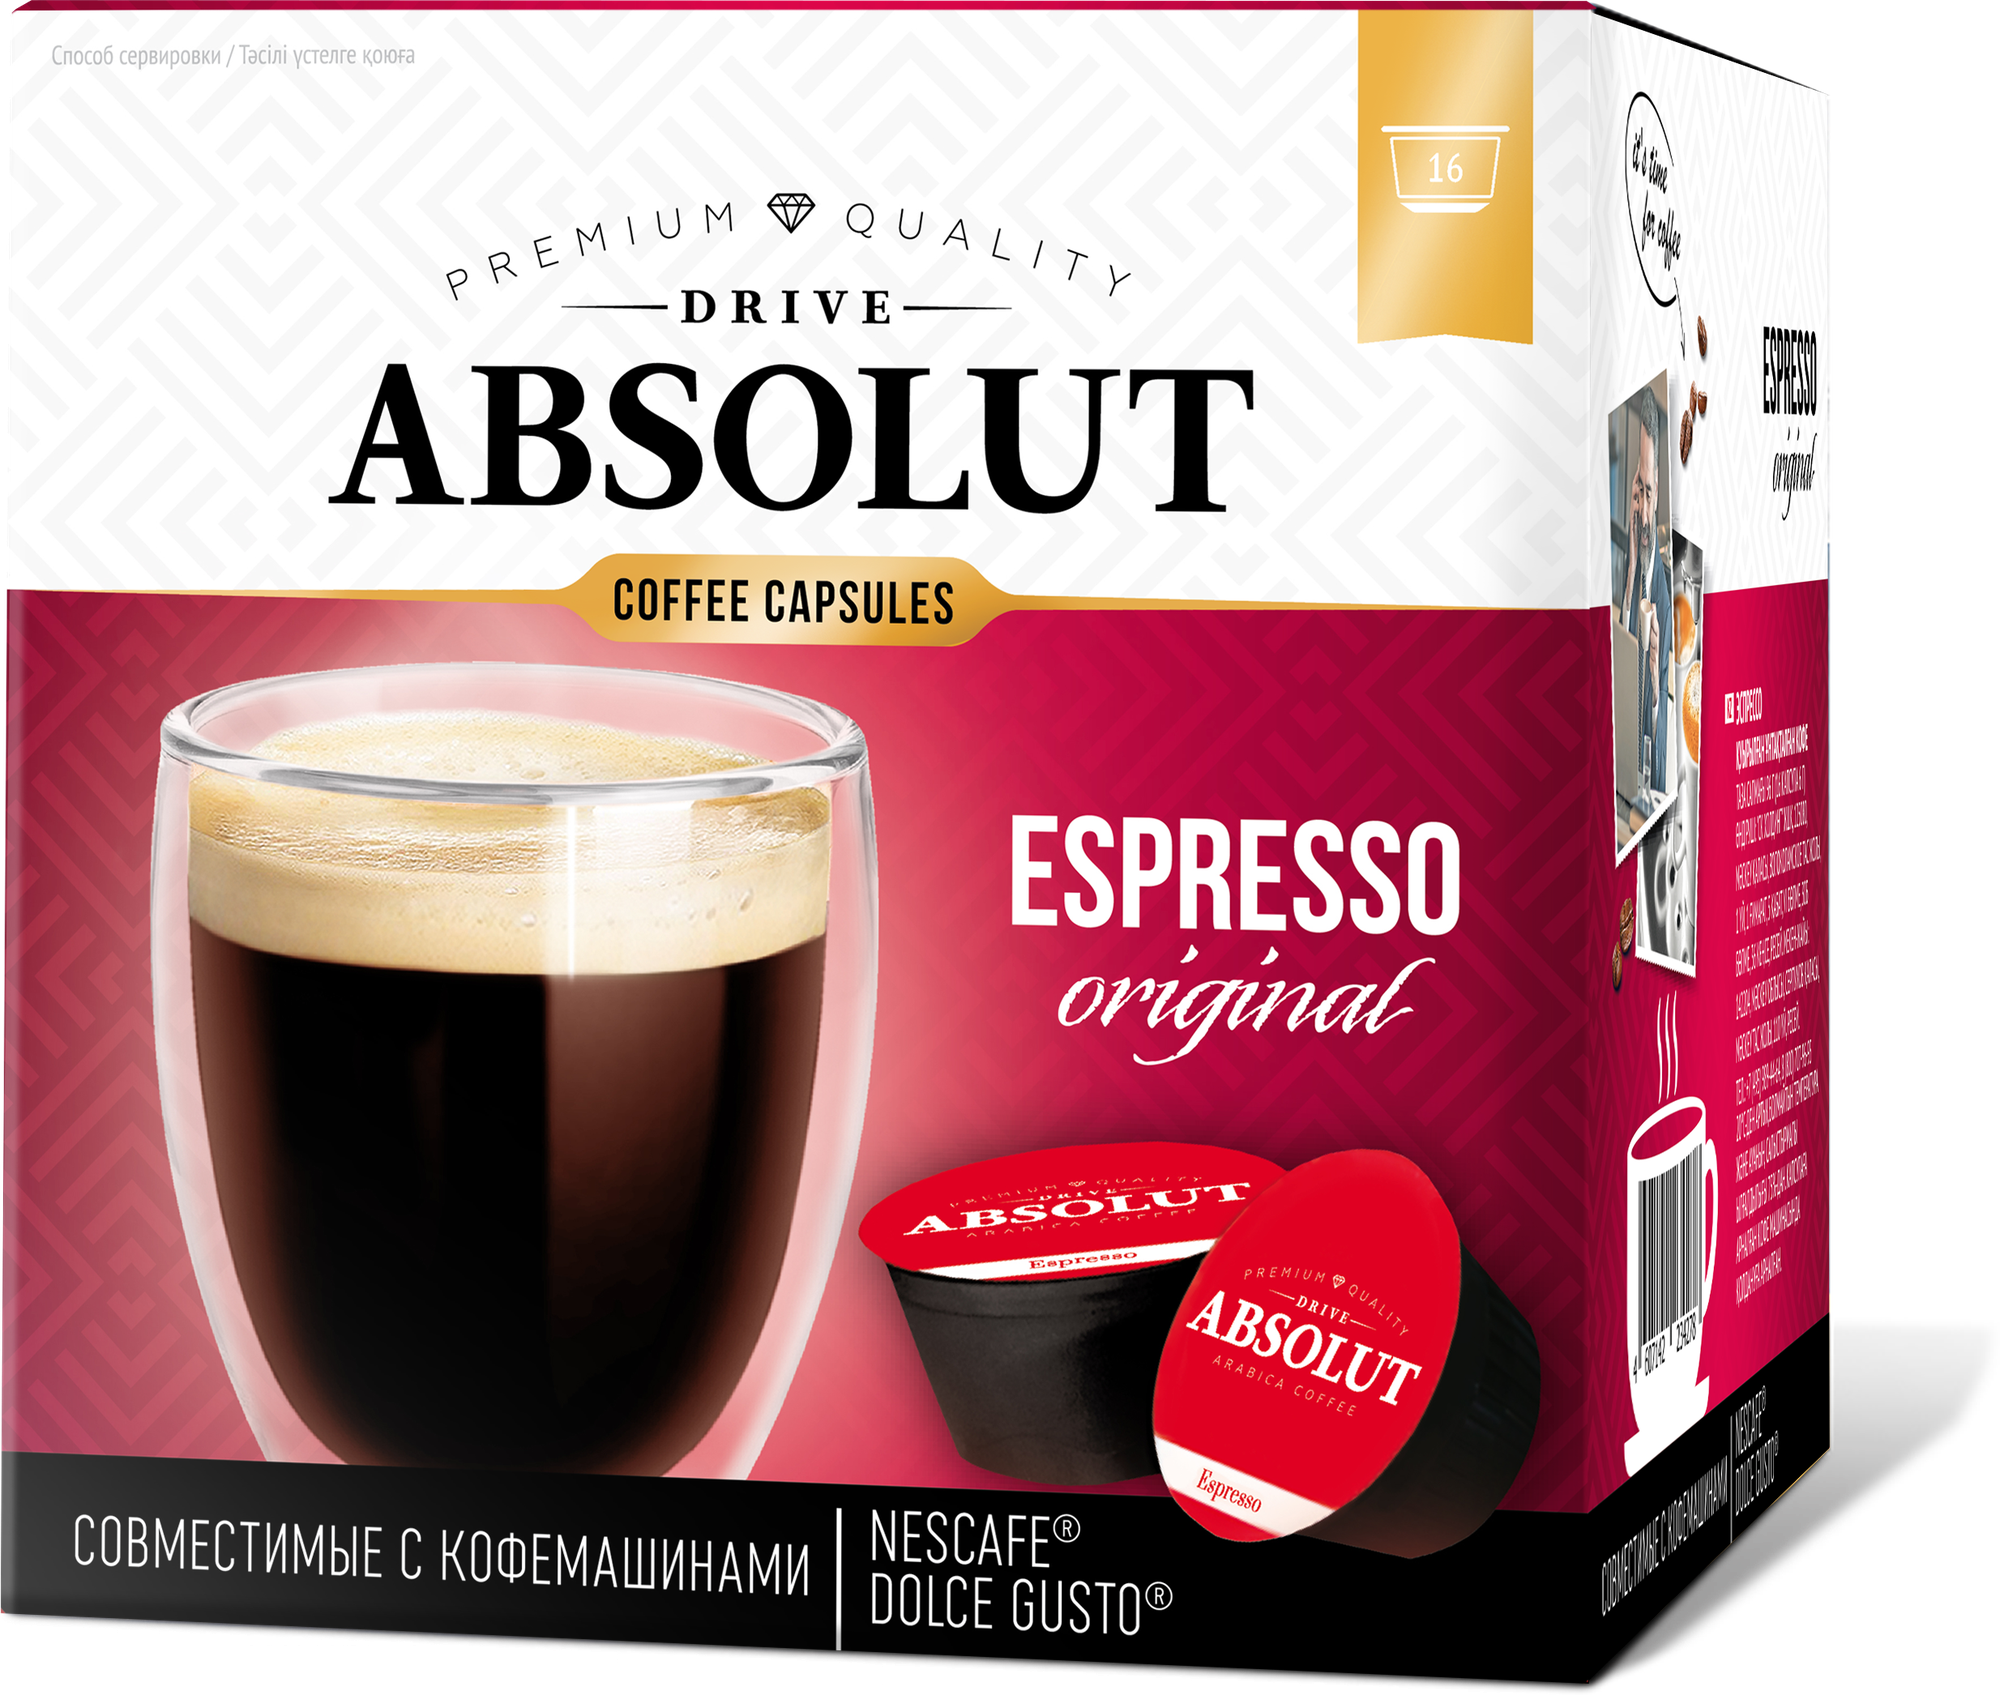 Кофе DRIVE ABSOLUT эспрессо в капсулах для кофемашины Dolce Gusto (Дольче Густо), 96 гр (16 штук по 6 гр)